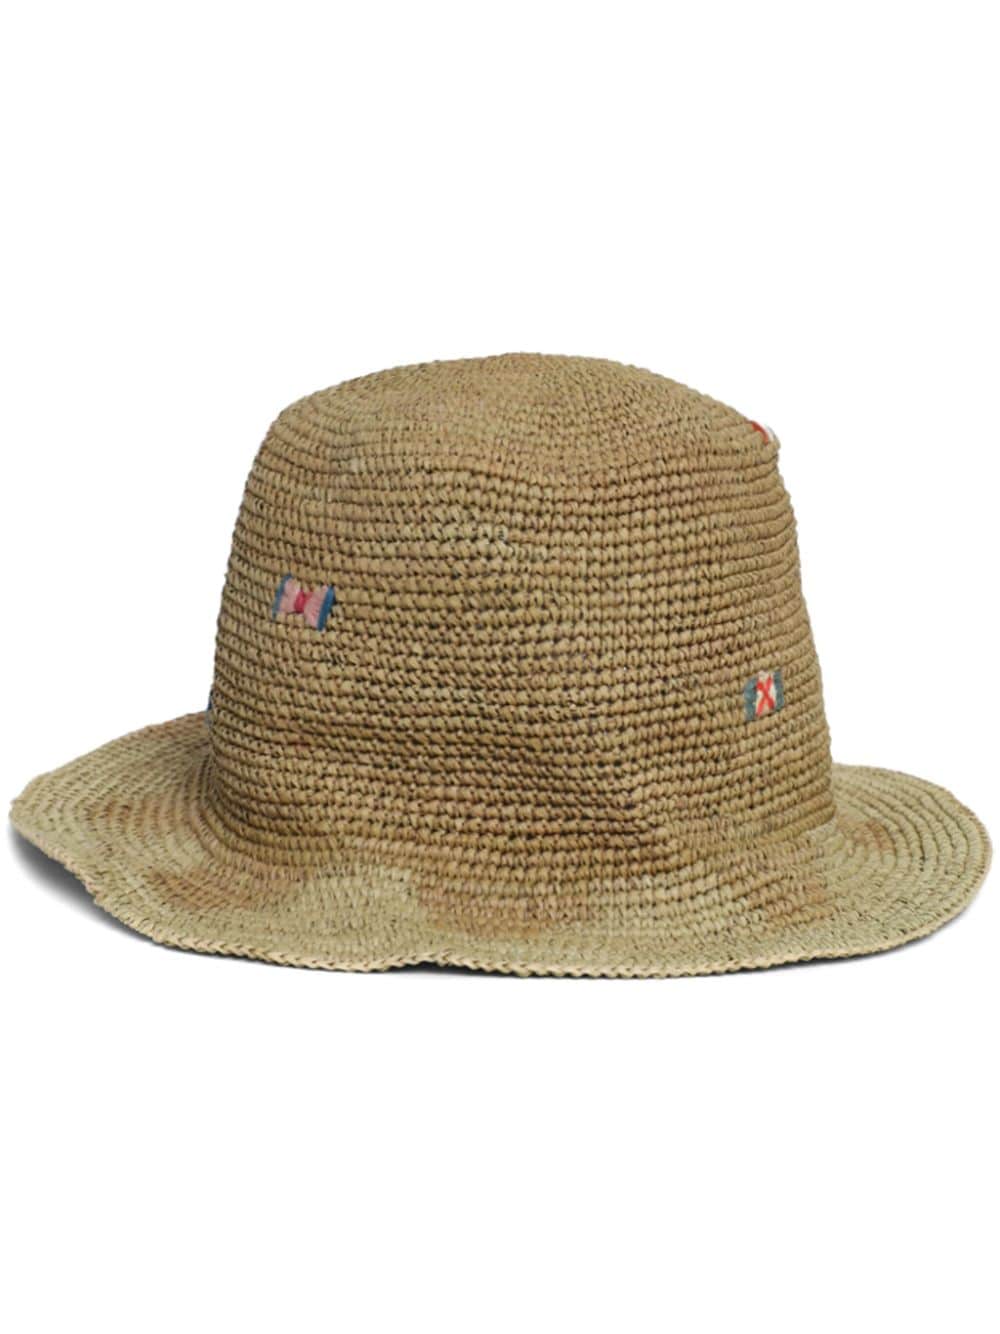 Nick Fouquet Vegabond Straw Sun Hat In Brown